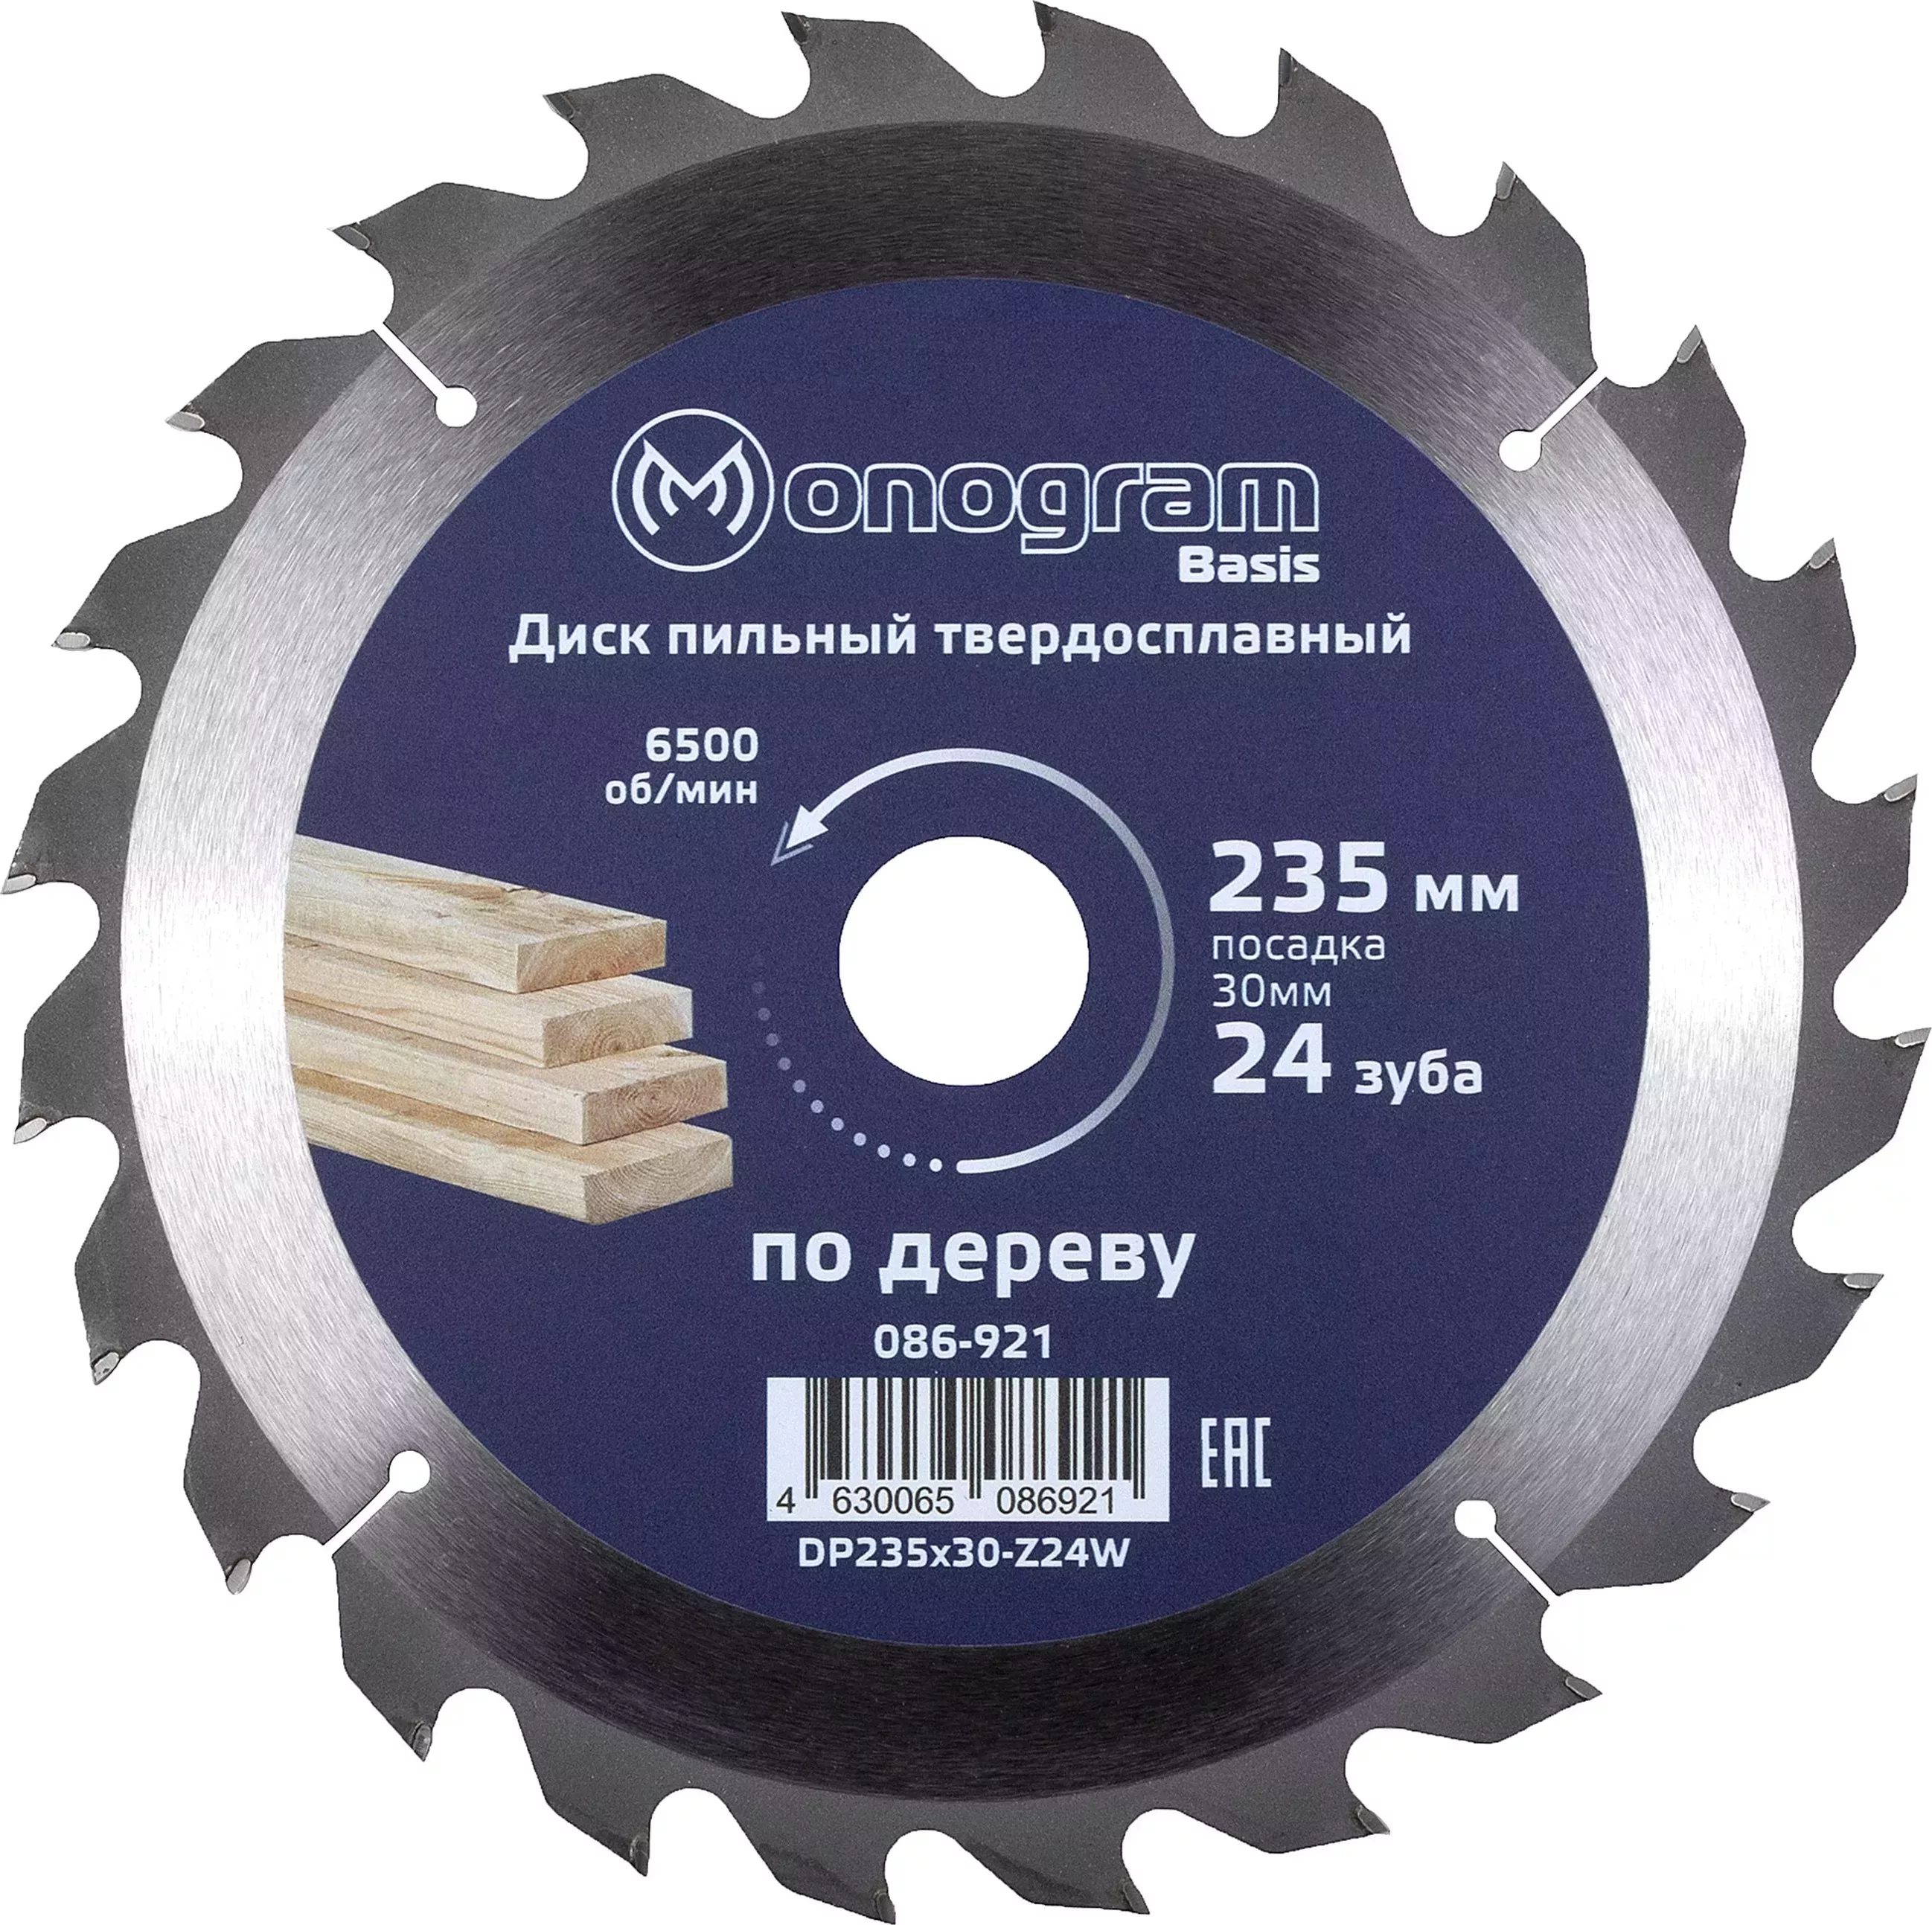 Диск пильный MONOGRAM (086-921) твердосплавный Basis 235х30мм, 24 зуба по дереву, ДСП, продольн. пил.